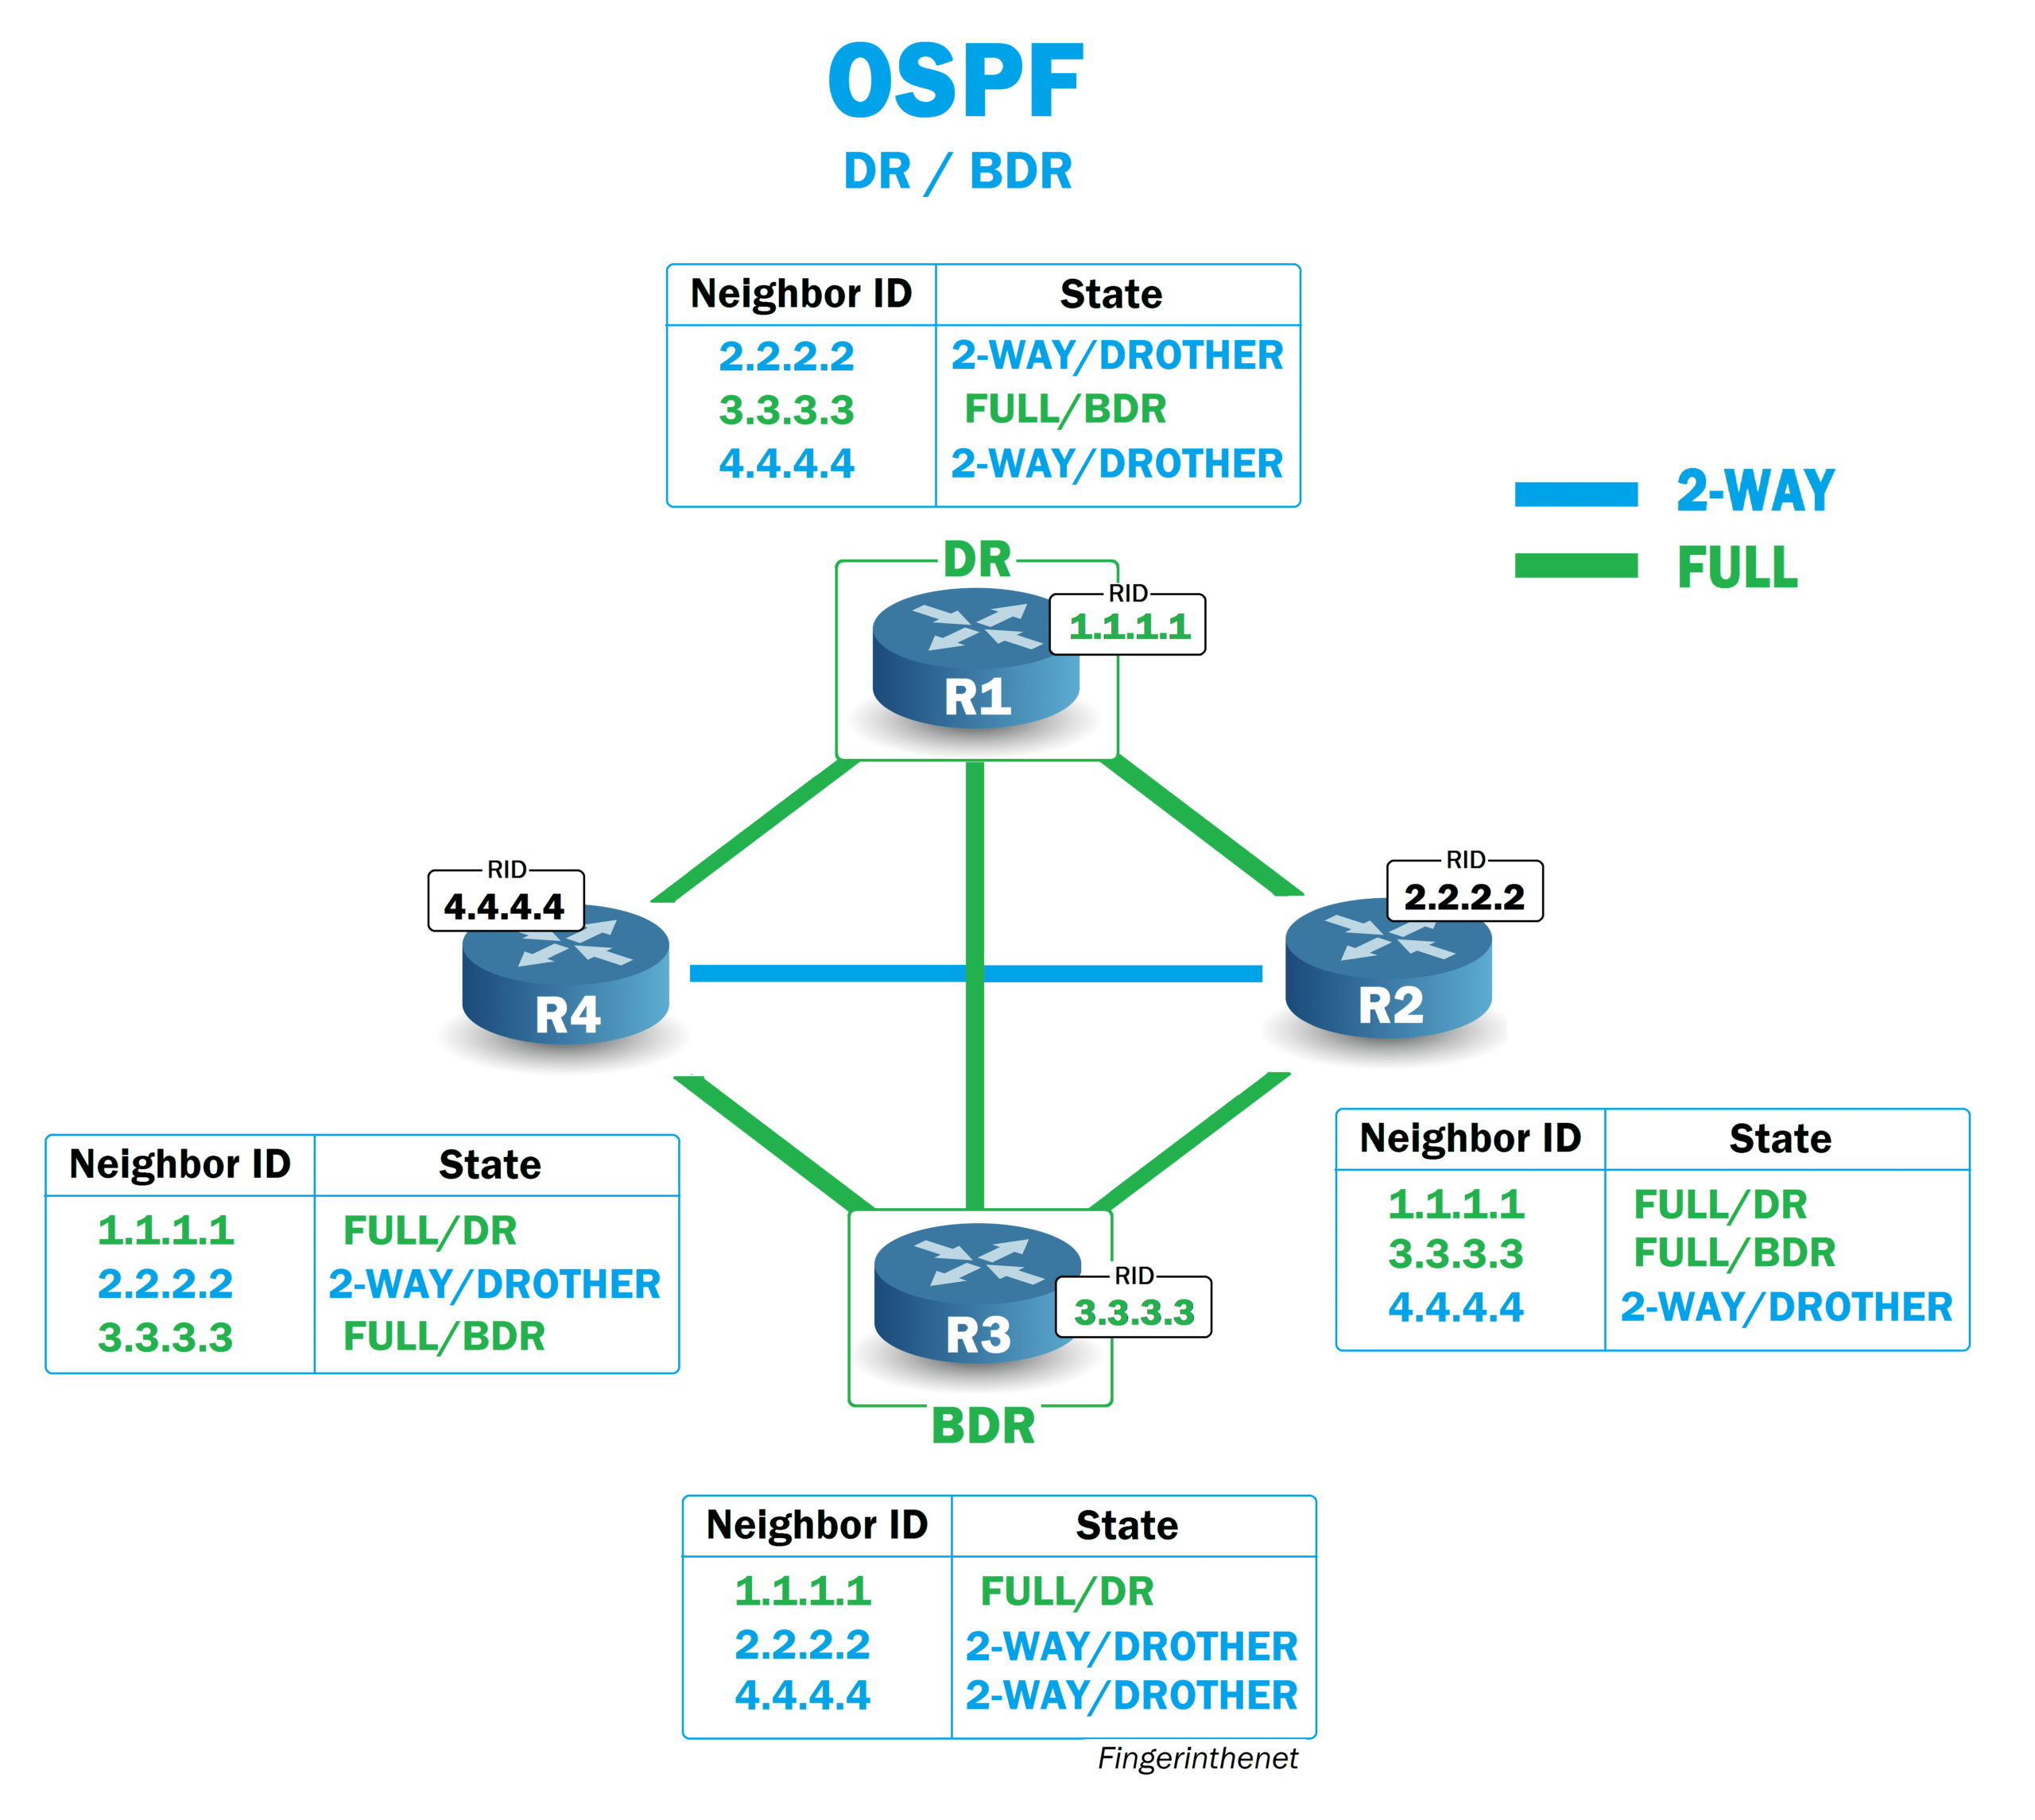 Echanges OSPF